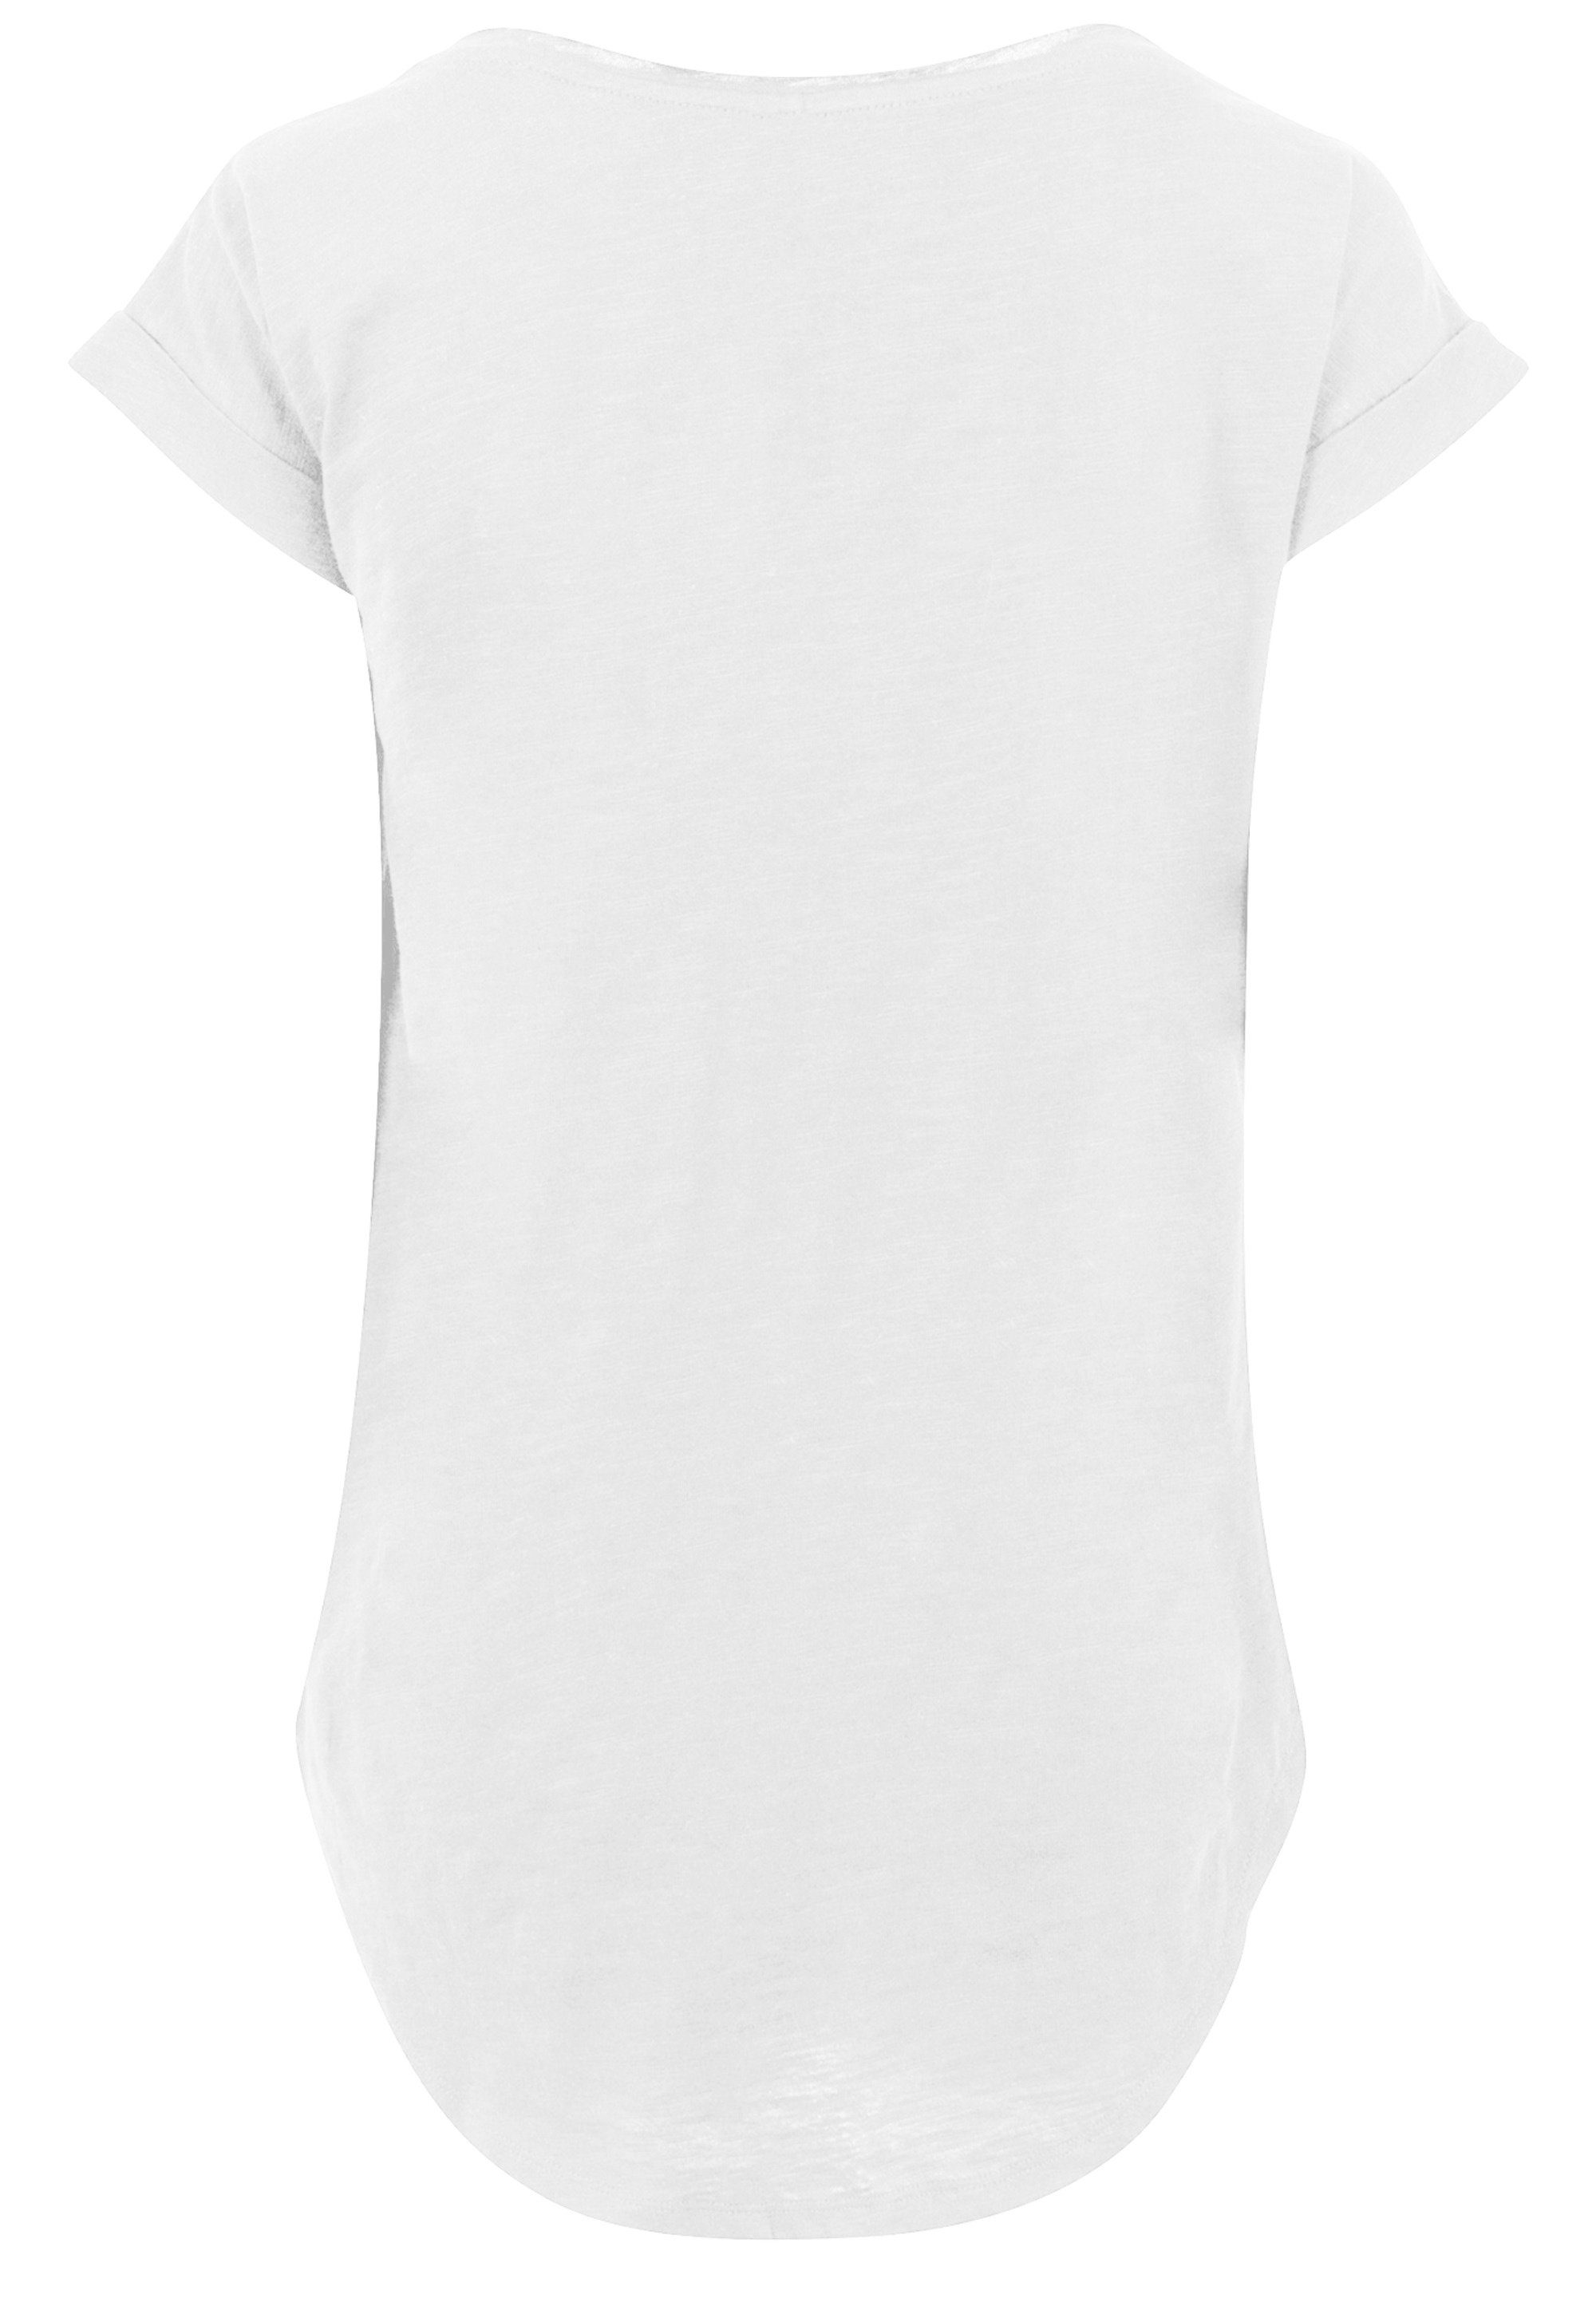 F4NT4STIC T-Shirt Damen,Premium Merch,Lang,Longshirt,Bedruckt F4NT4STIC T-Shirt